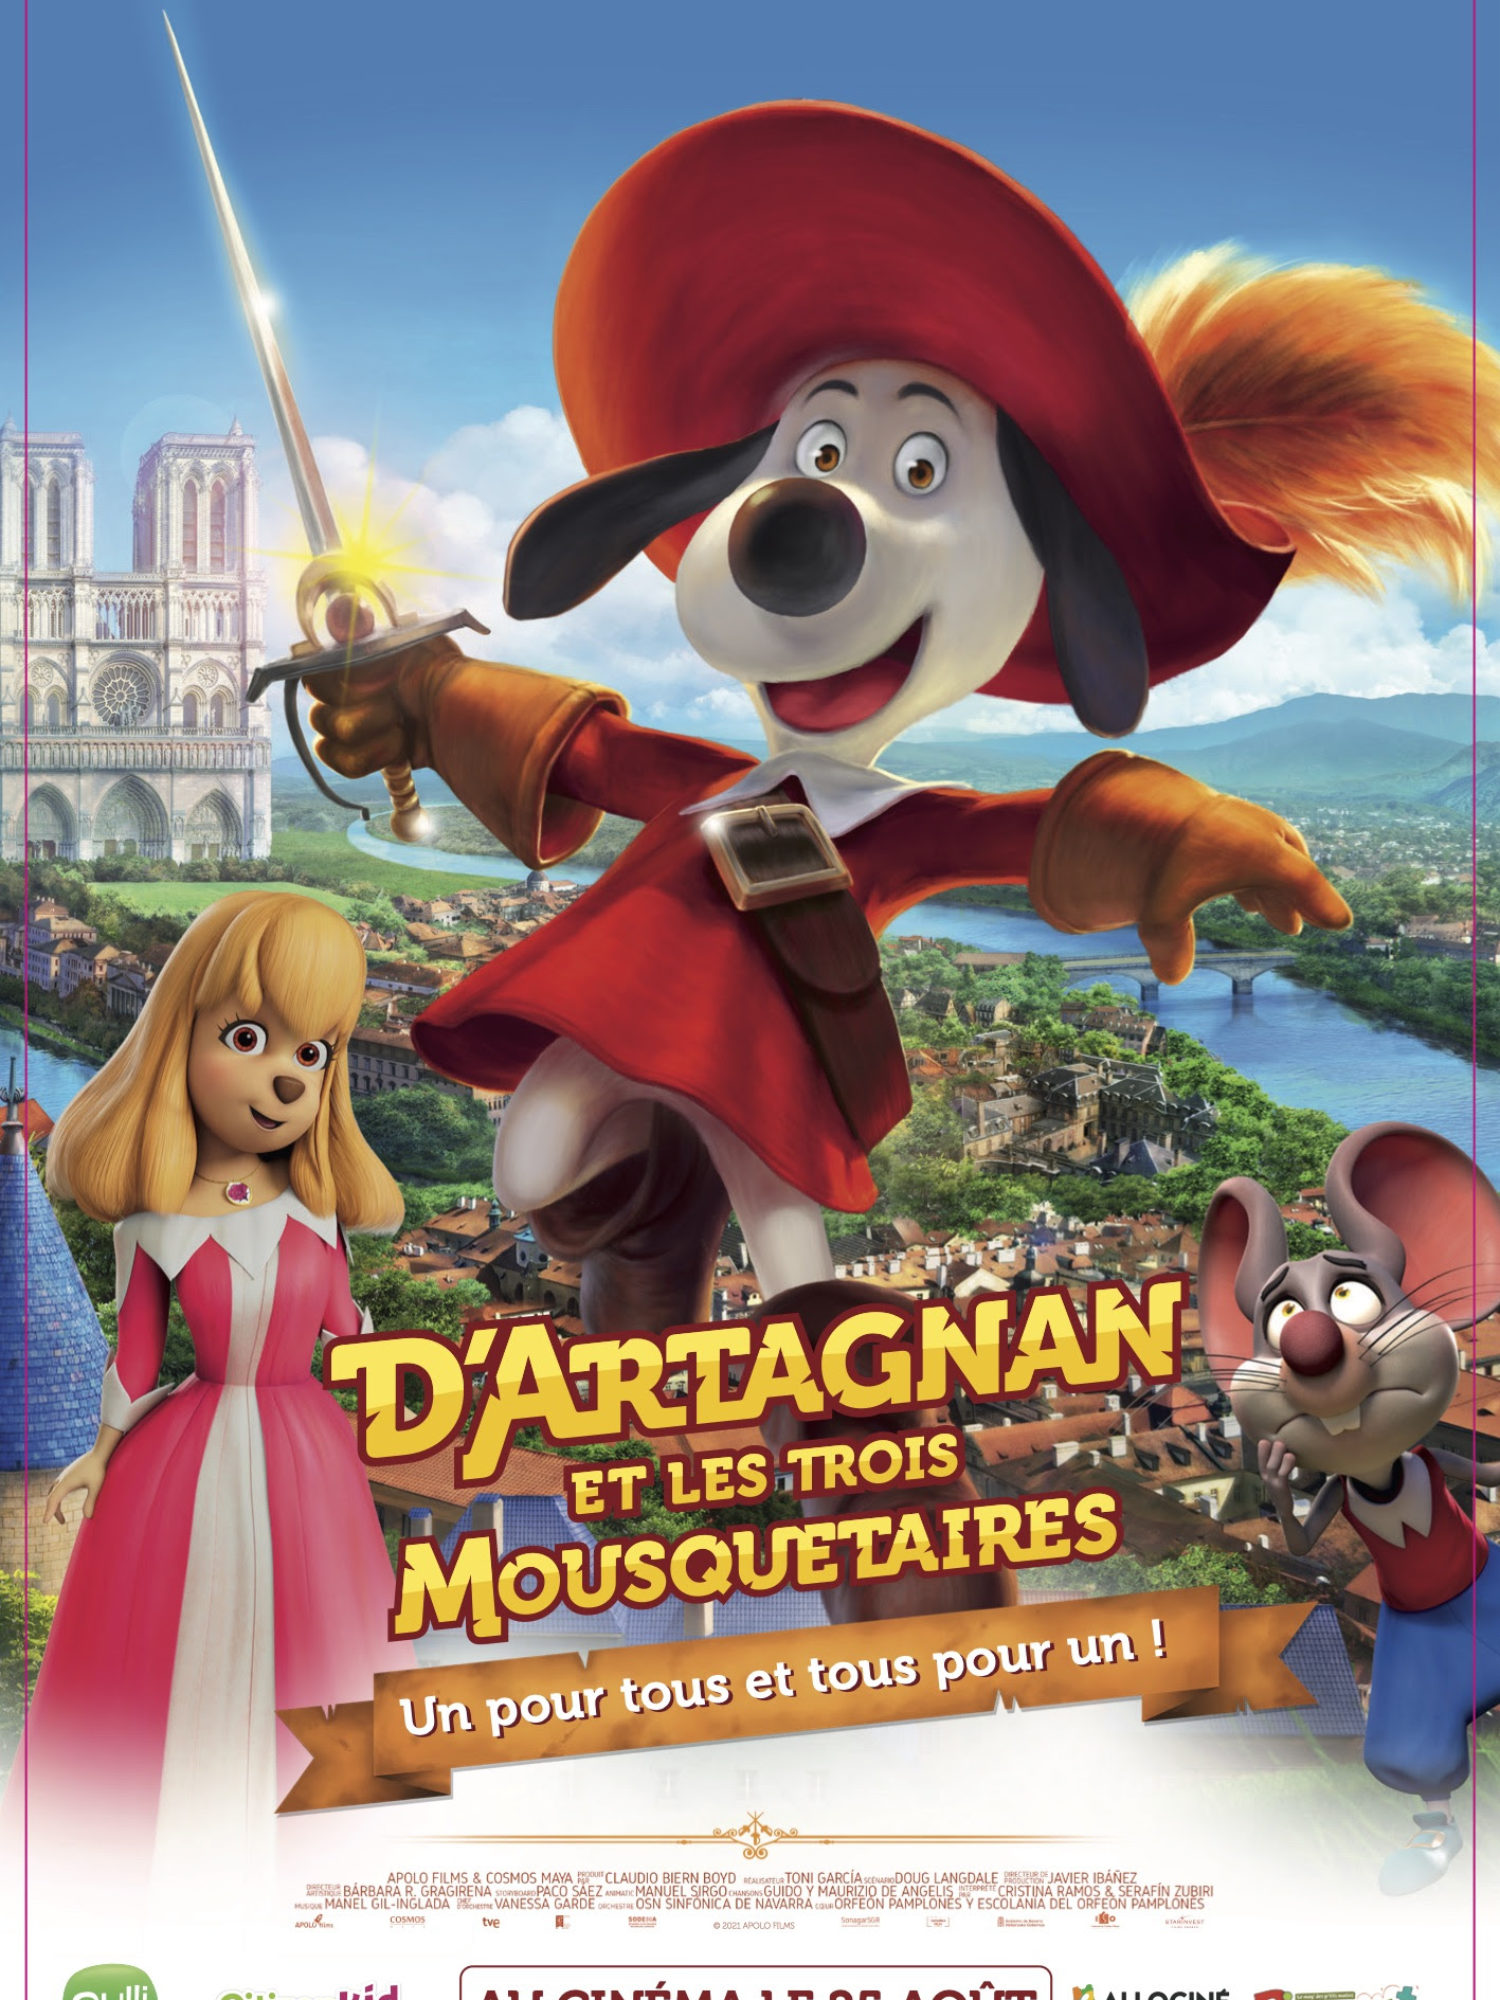 Kids Corner: D’Artagnan et Les Trois Mousquetaires